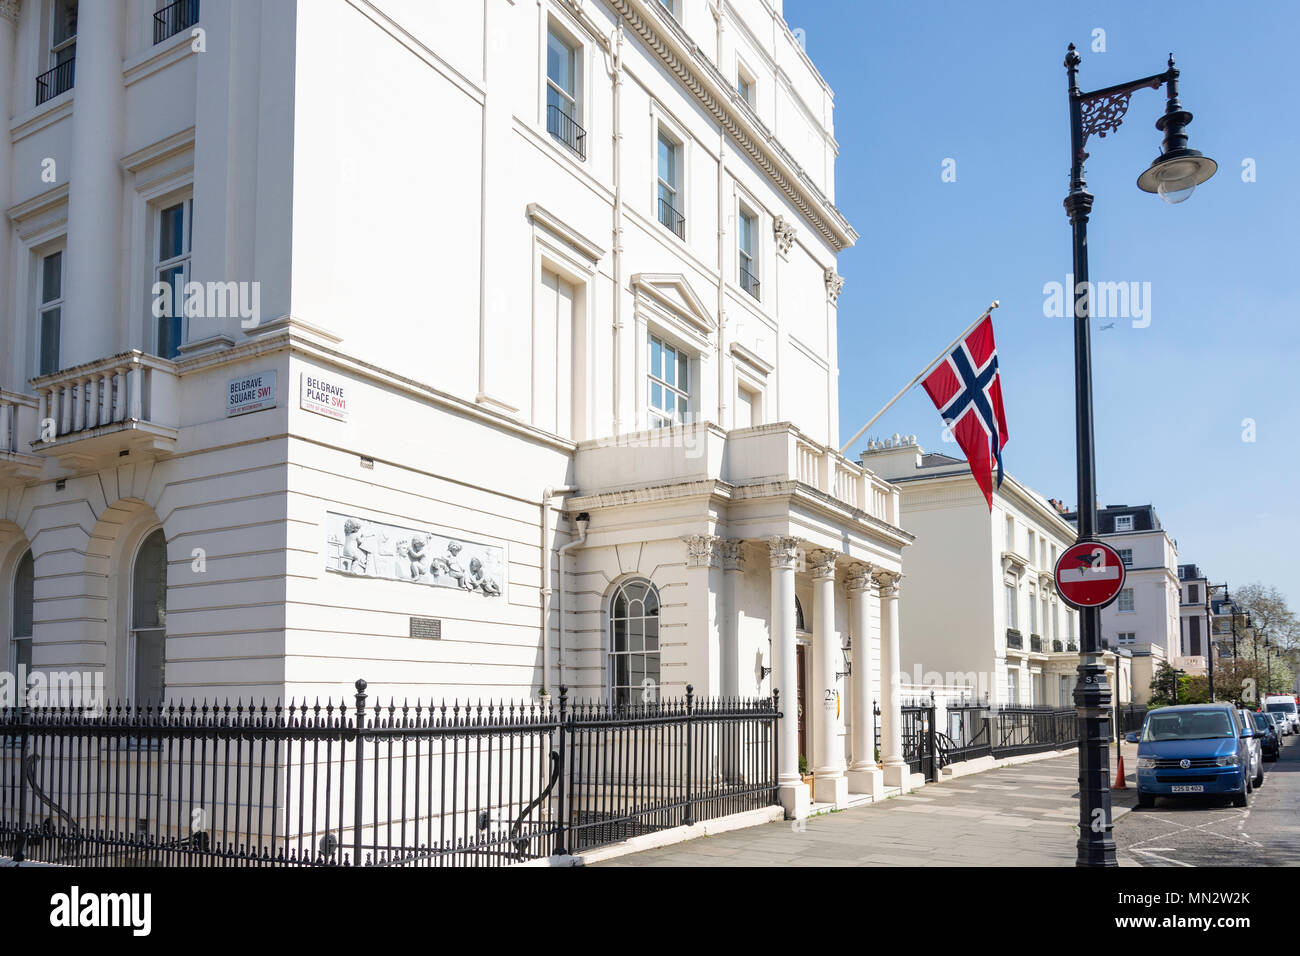 Botschaft des Königreiches Norwegen, Belgrave Square, Belgravia, Westminster, London, England, Vereinigtes Königreich Stockfoto